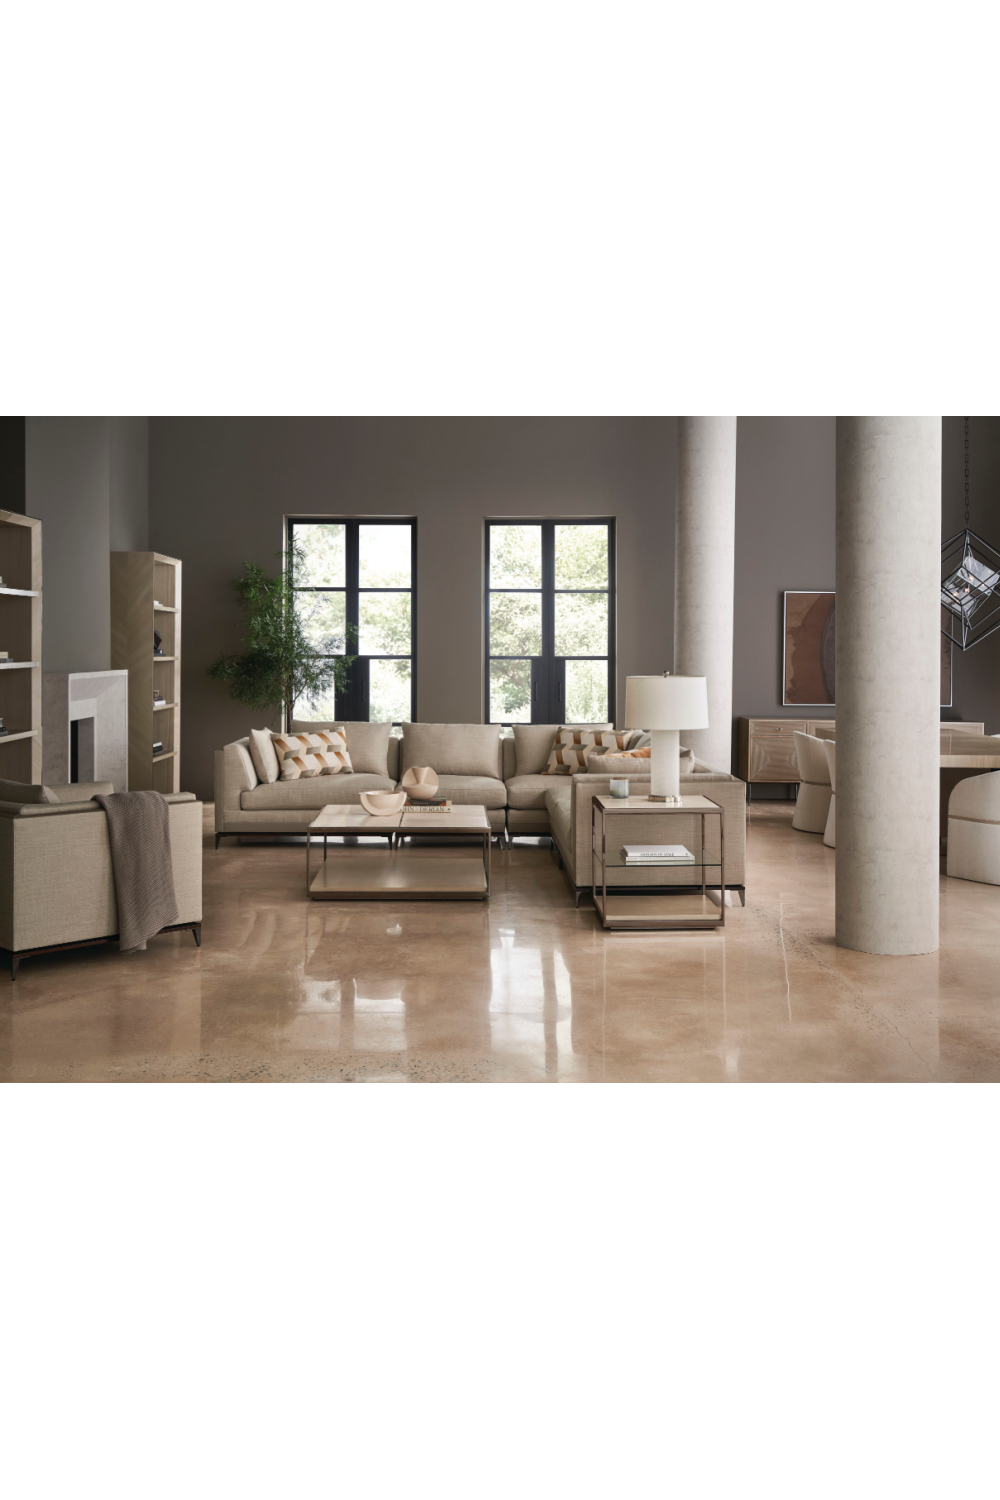 Taupe Modern Sectional Sofa | Caracole Archipelago | Oroa.com